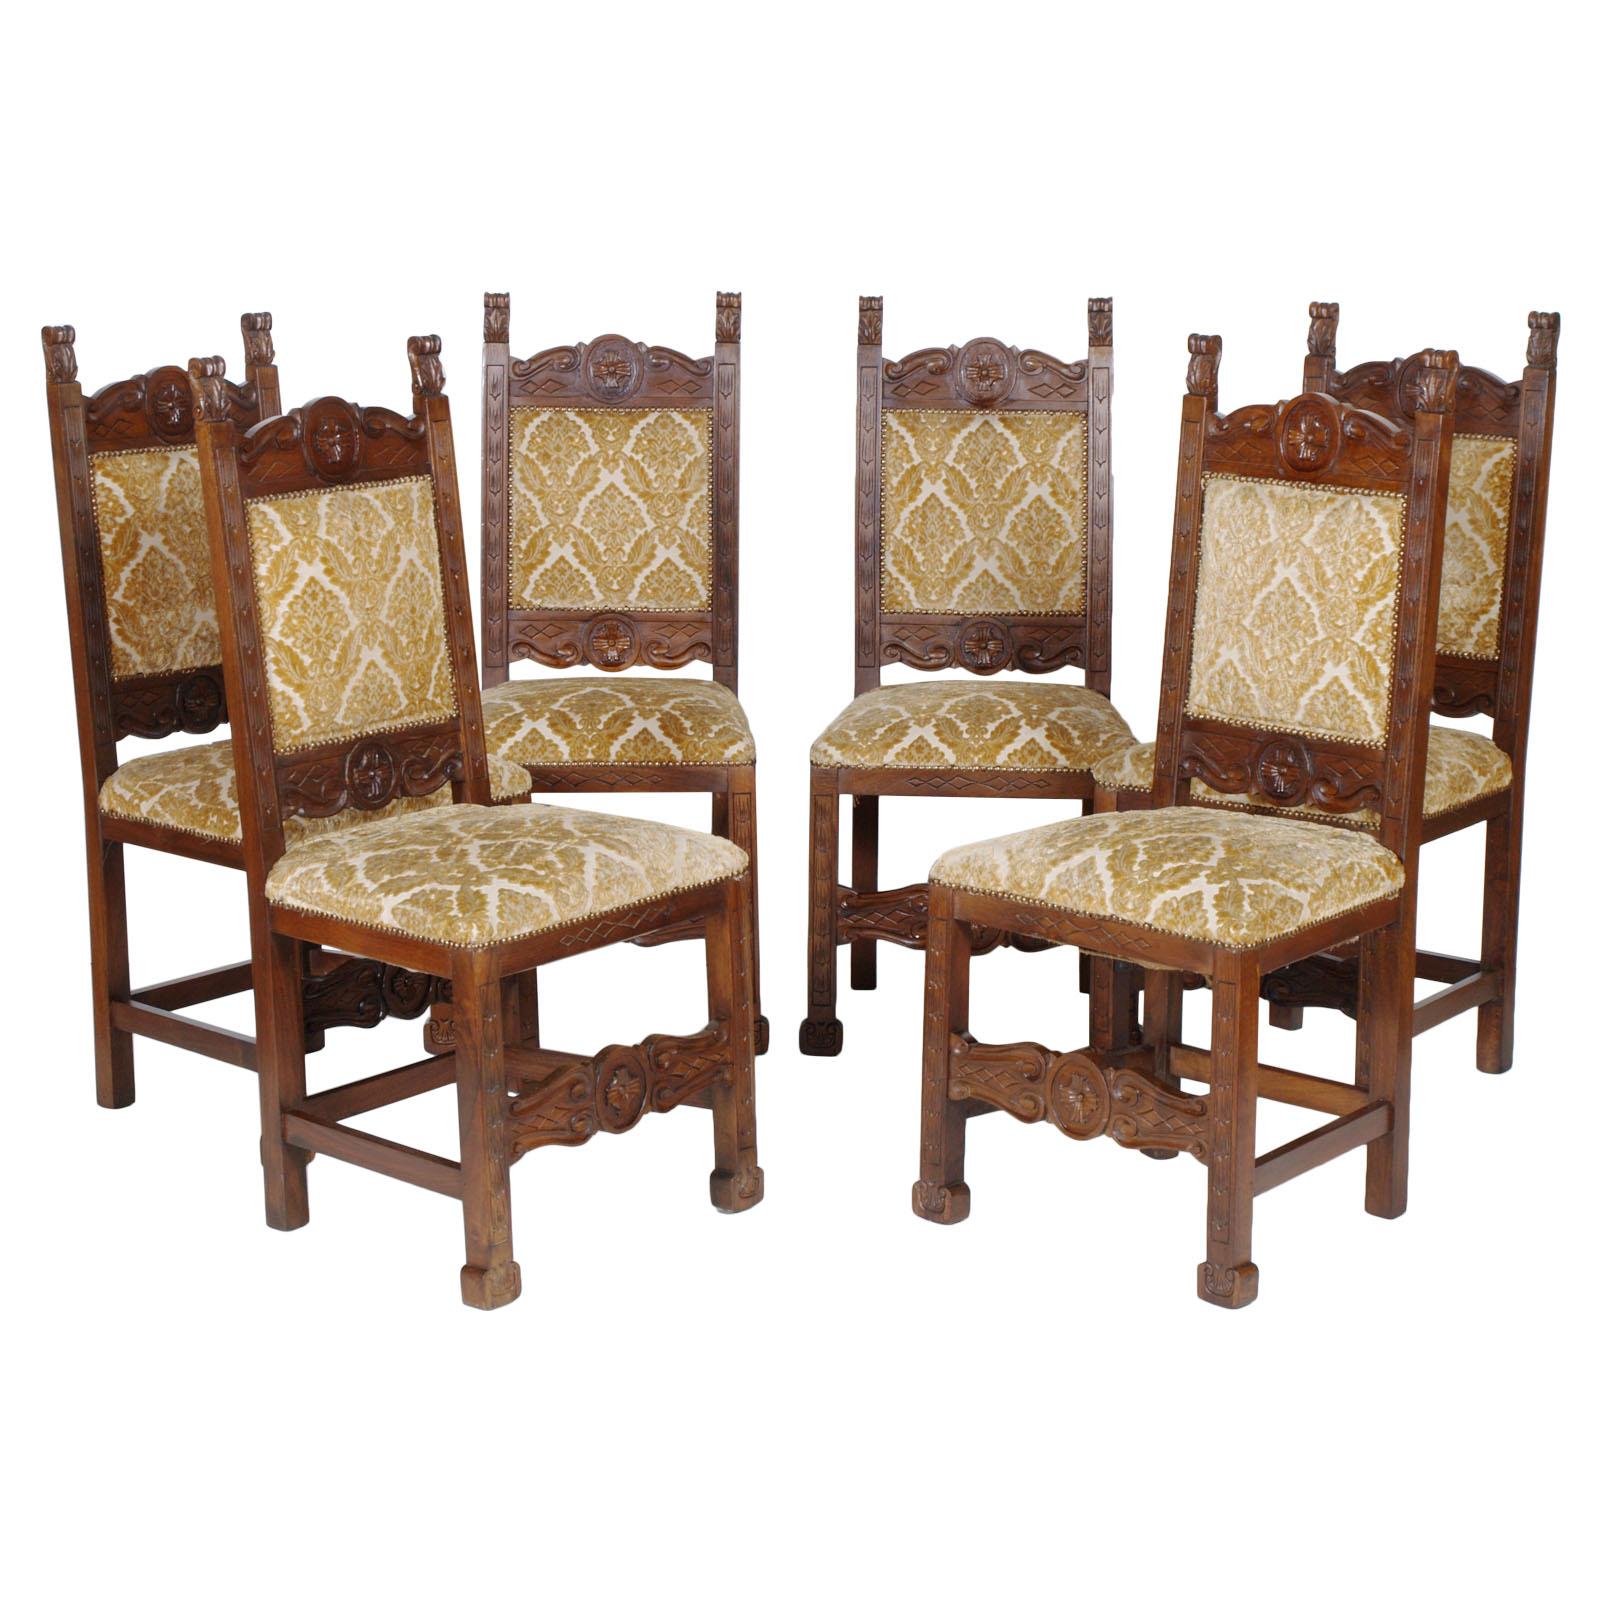 Sechs Renaissance-Stühle aus massivem Nussbaumholz, reich handgeschnitzt, frühes 20. Jahrhundert